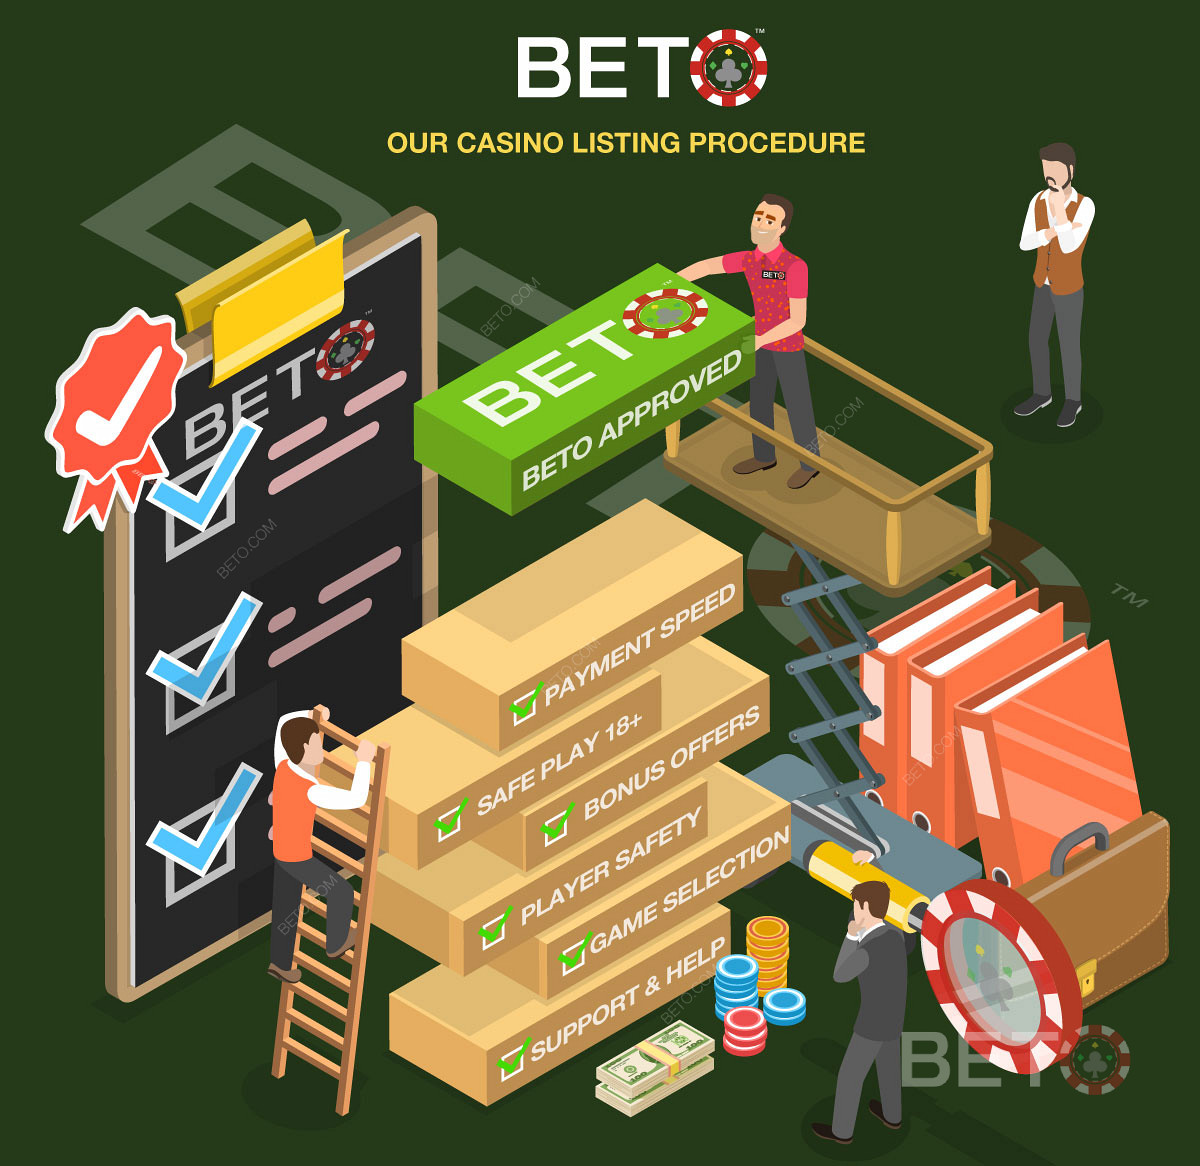 Het gedetailleerde Casino Overzicht Proces op BETO.com